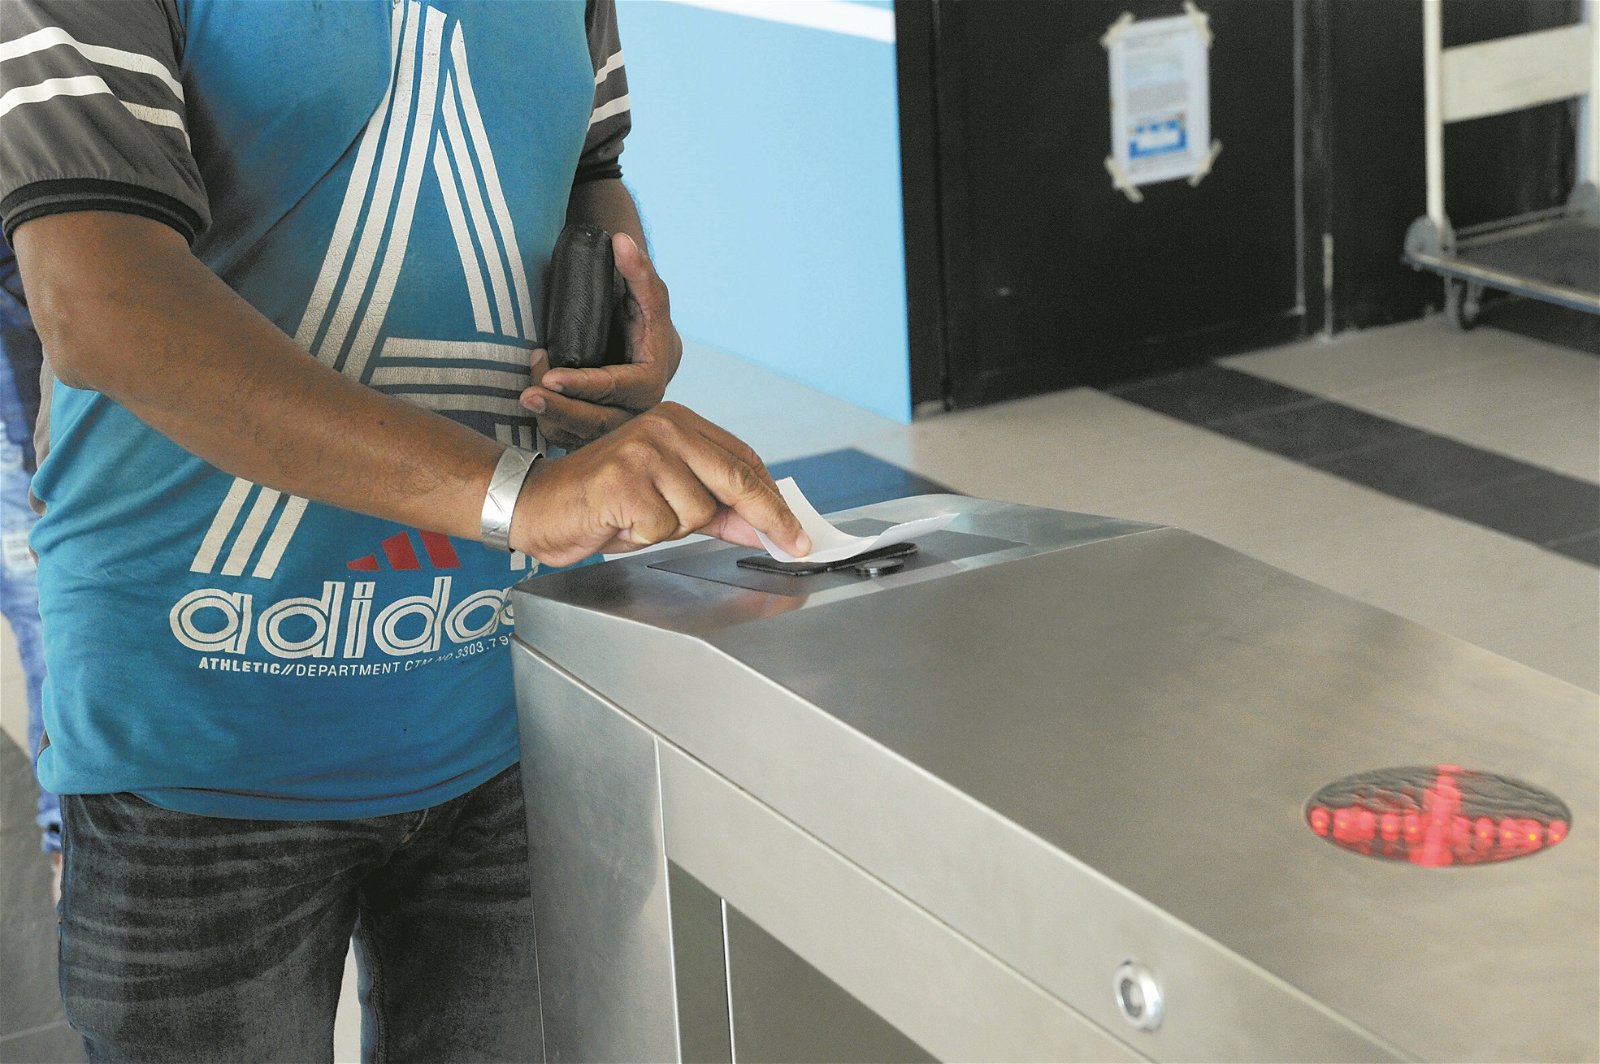 乘客扫描票根的二维码后就能通关，能避免乘客找不到零钱投币通关问题。